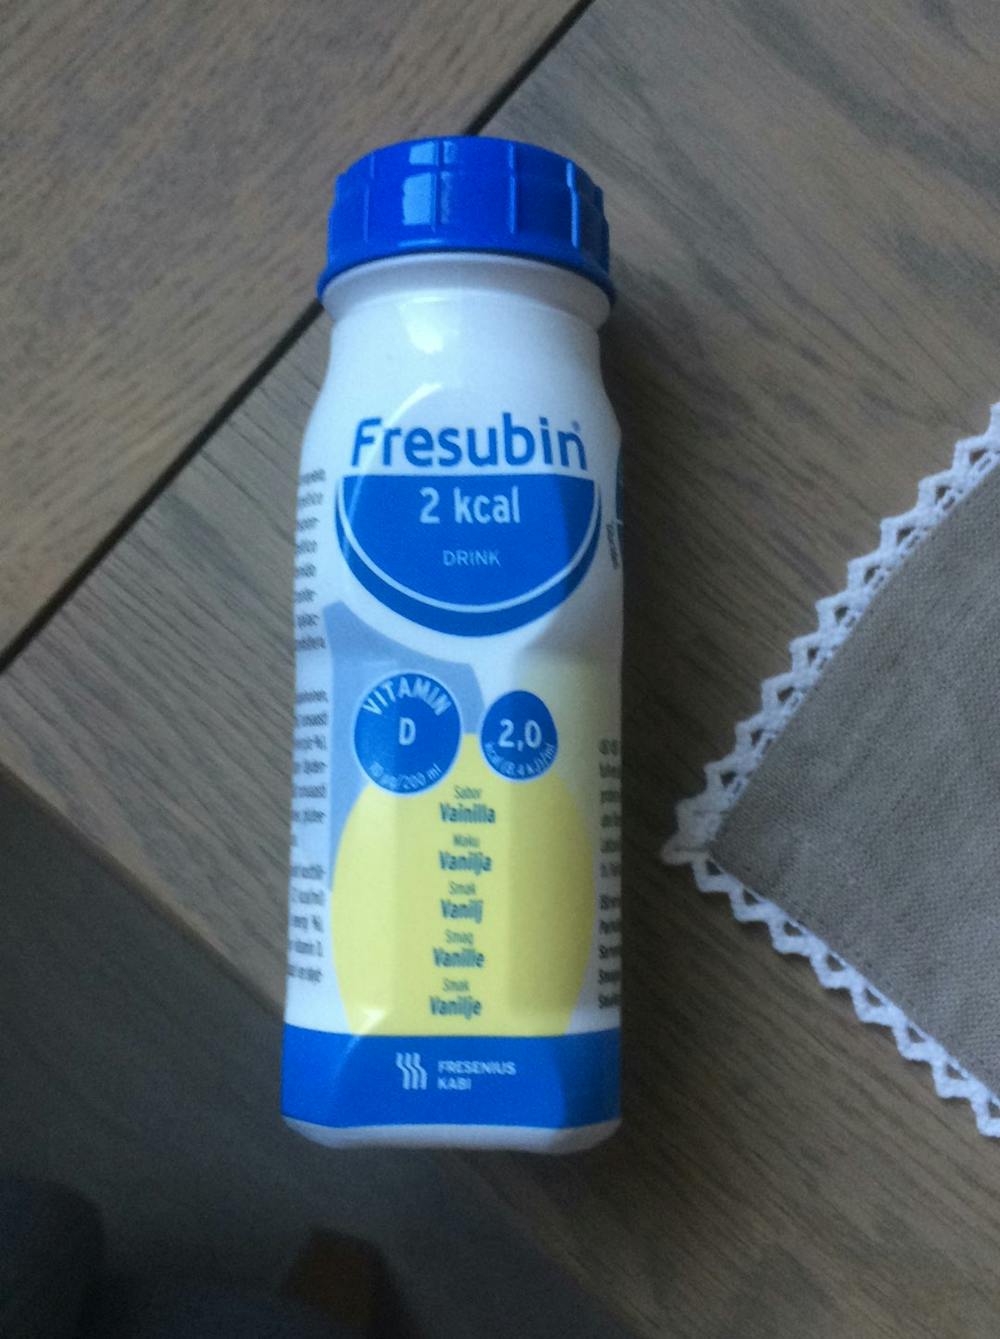 Fresubin 2 kcal drink, vanilje, Fresenius kabi